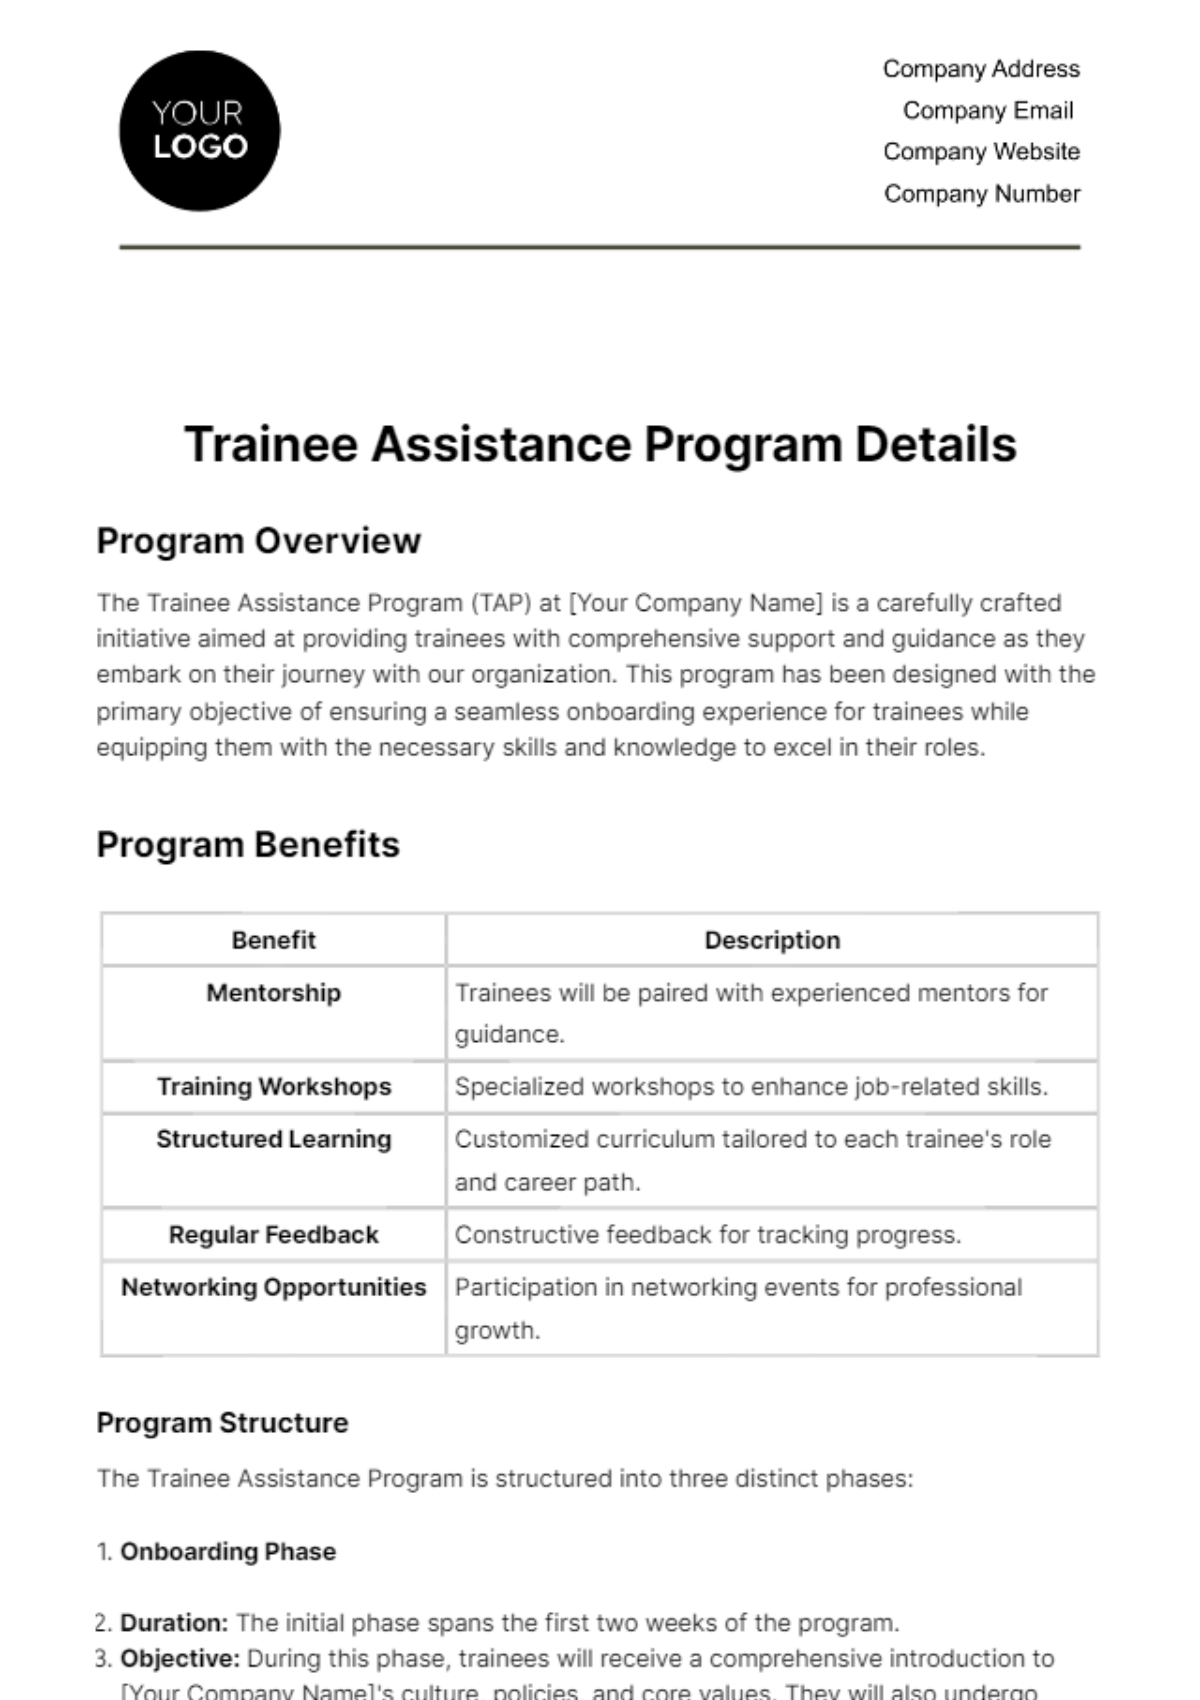 Trainee Assistance Program Details HR Template